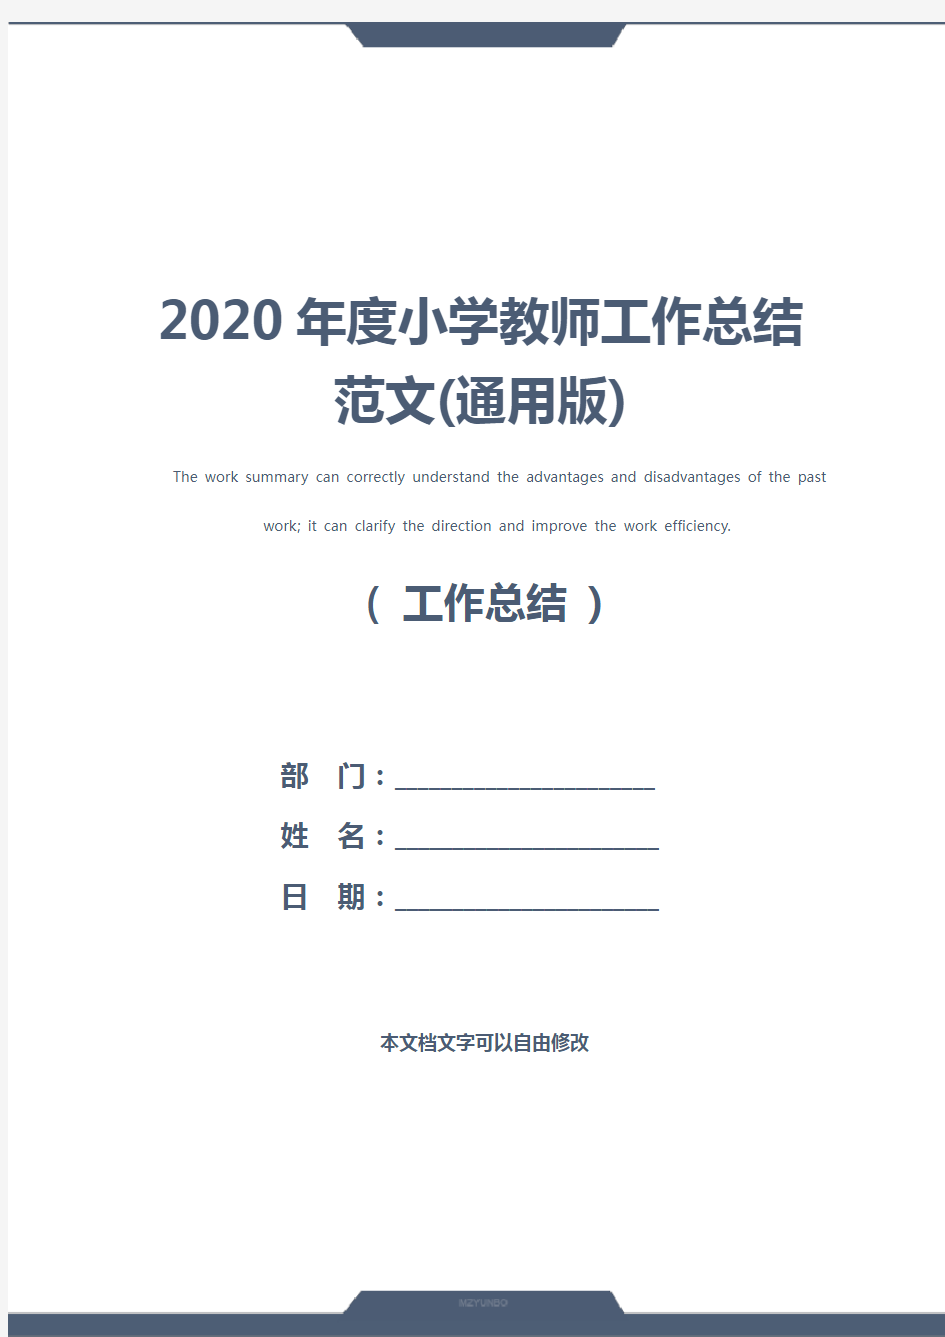 2020年度小学教师工作总结范文(通用版)